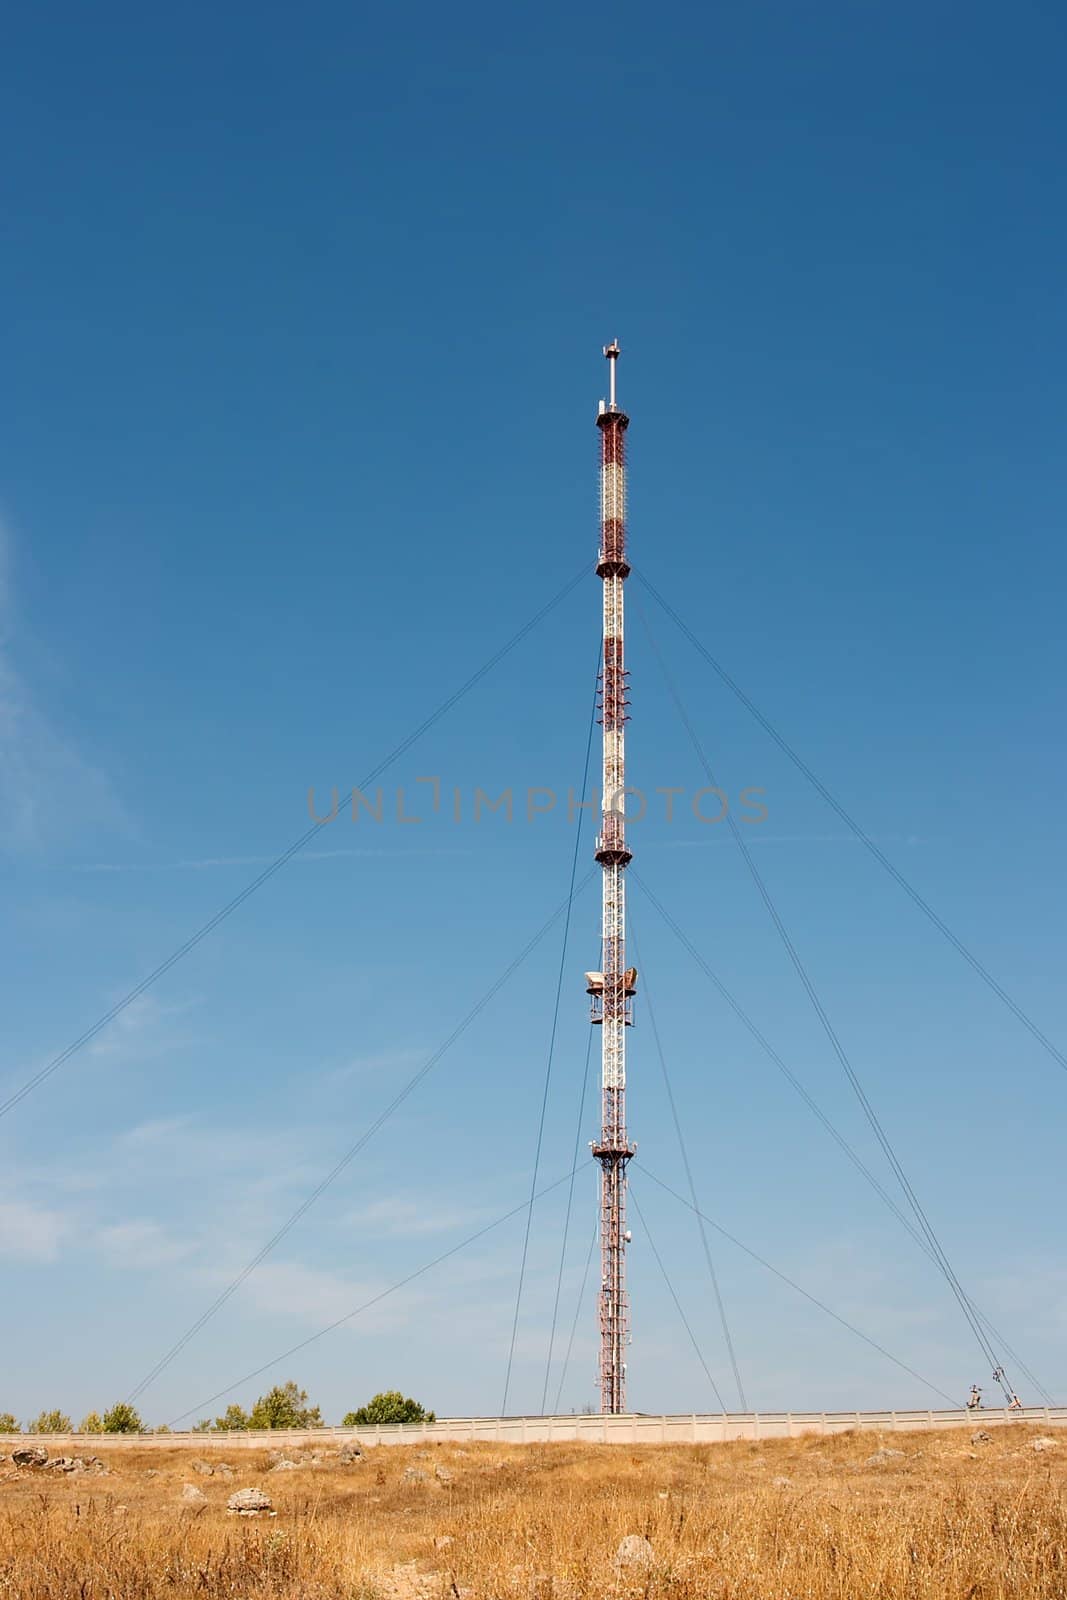 Tall communication tower on a barren land